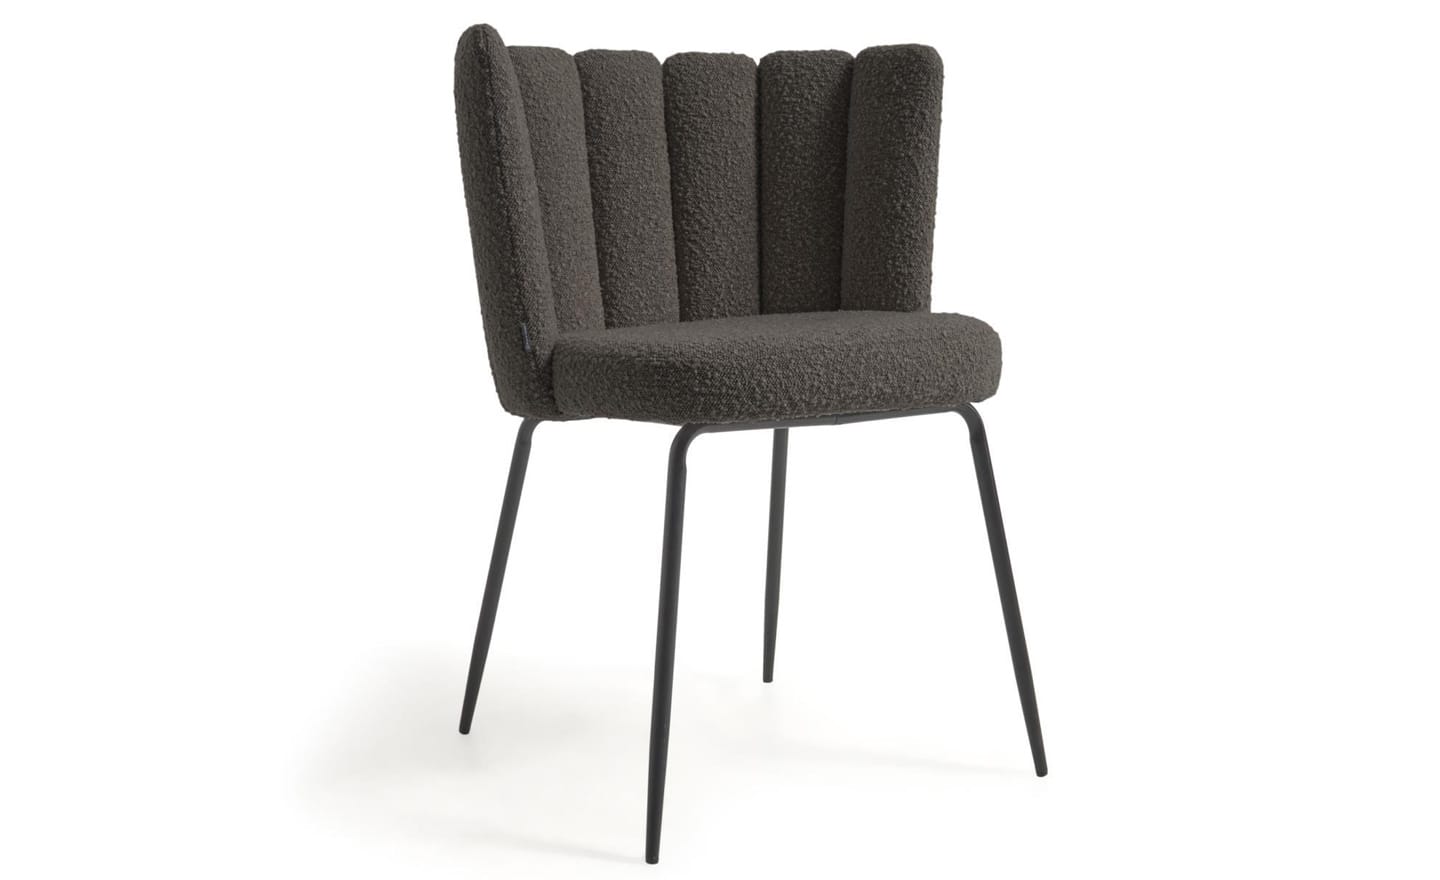 Cadeira Aniela Preto, estofada com tecido de efeito borrego preto. Design envolvente para espaços de refeição elegantes.